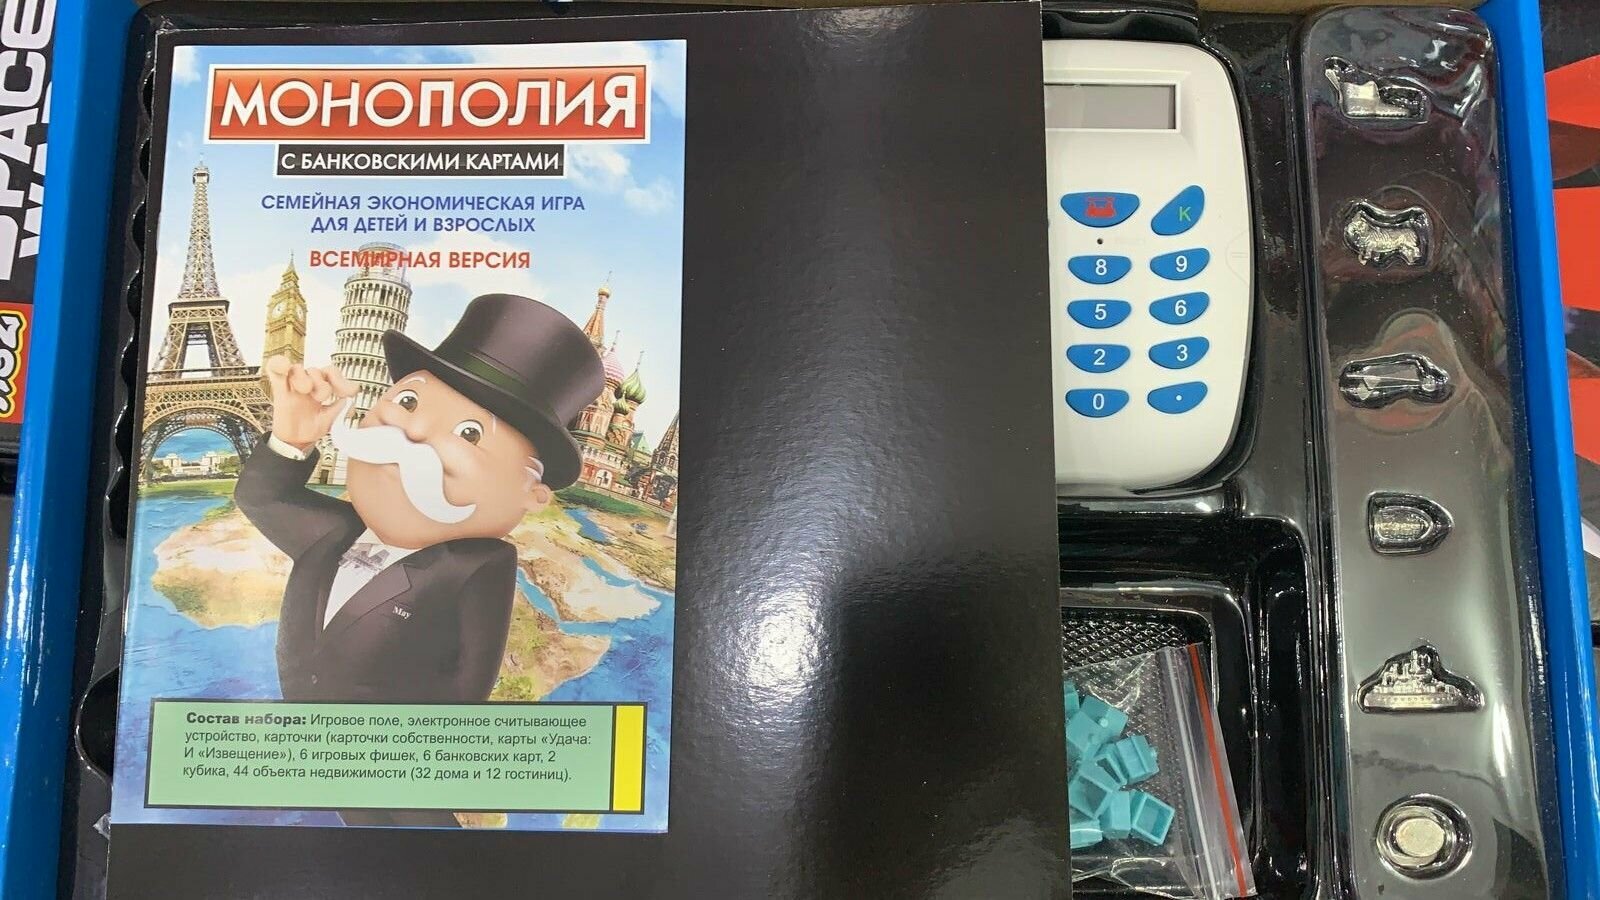 Настольная игра "Монополия" терминал, с банковскими картами